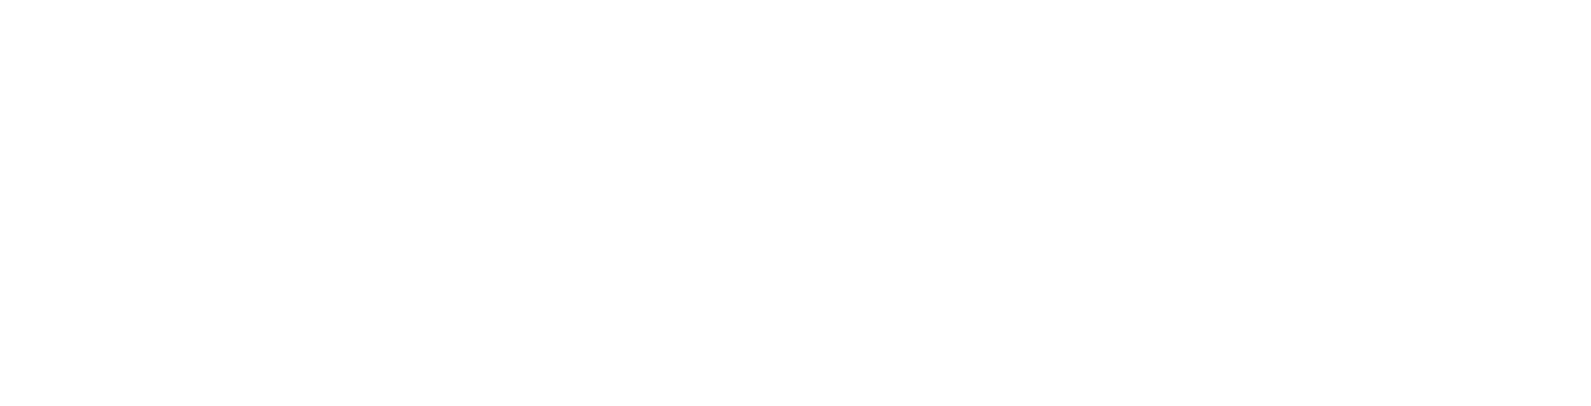 Valmet
 logo large for dark backgrounds (transparent PNG)